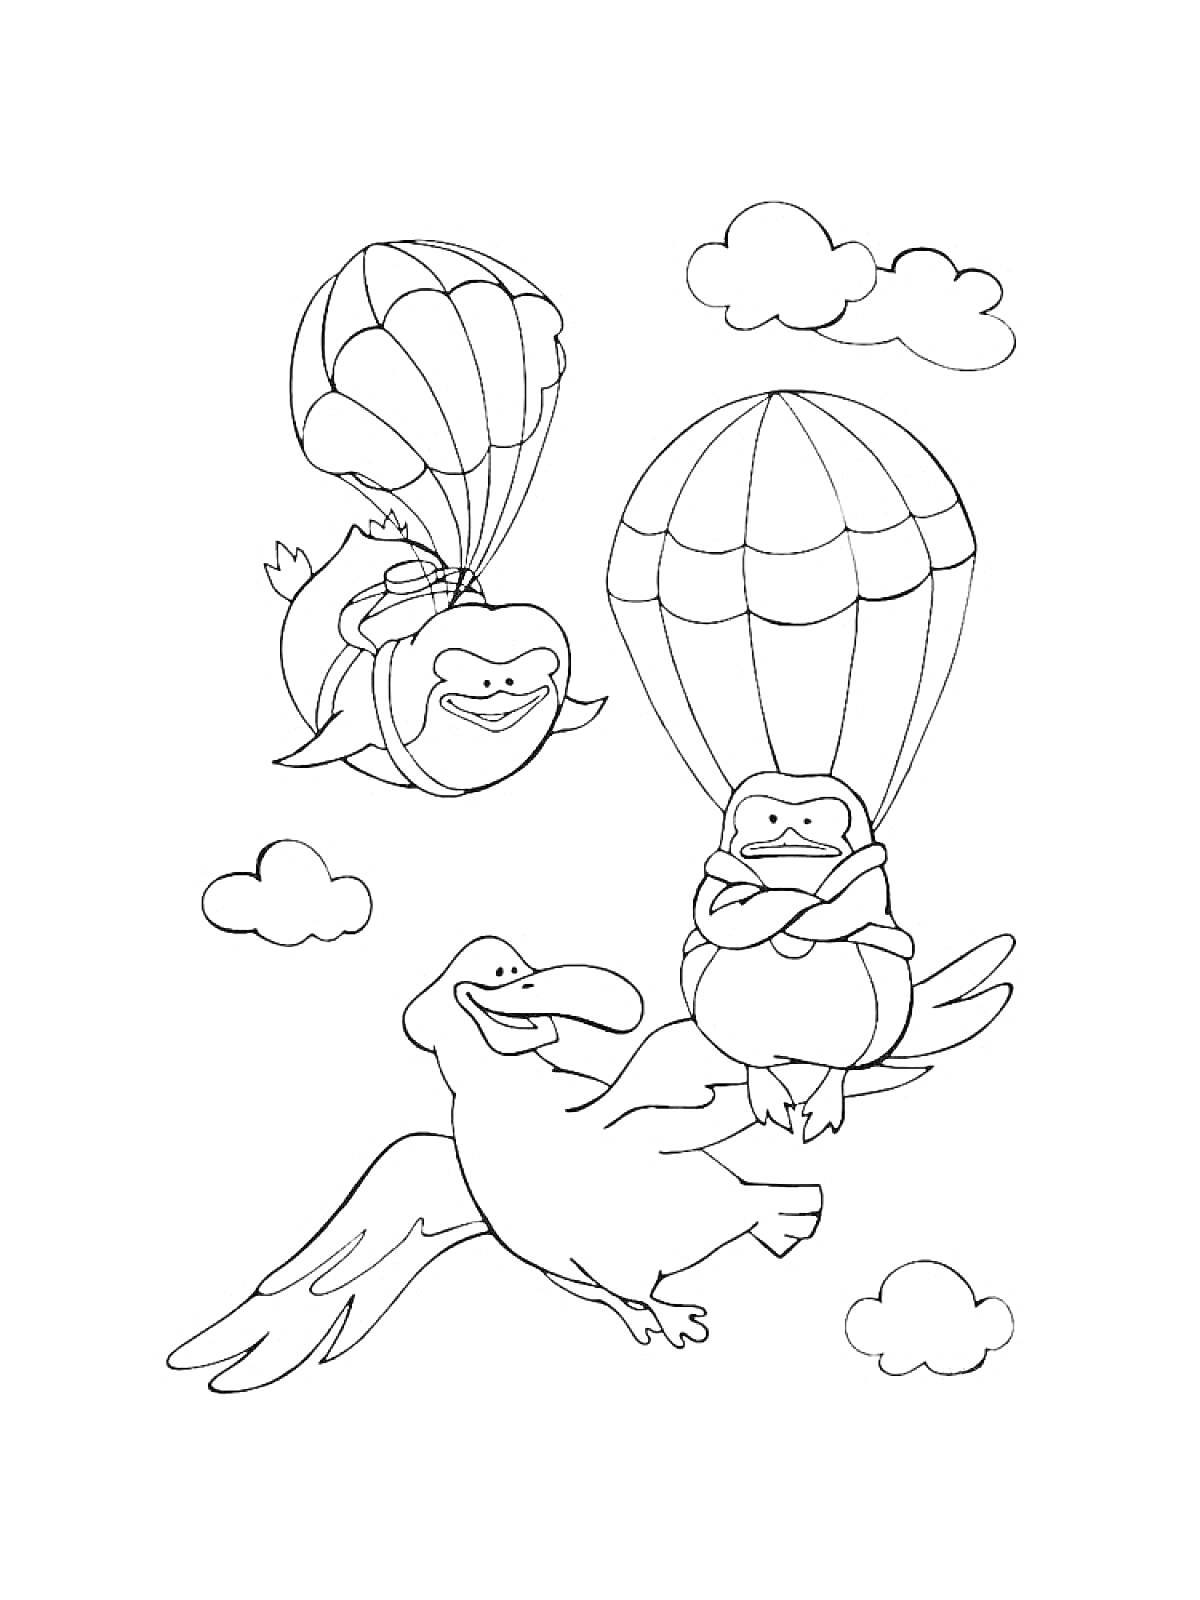 Раскраска Два катящихся зверька с парашютами и птица, летящая среди облаков